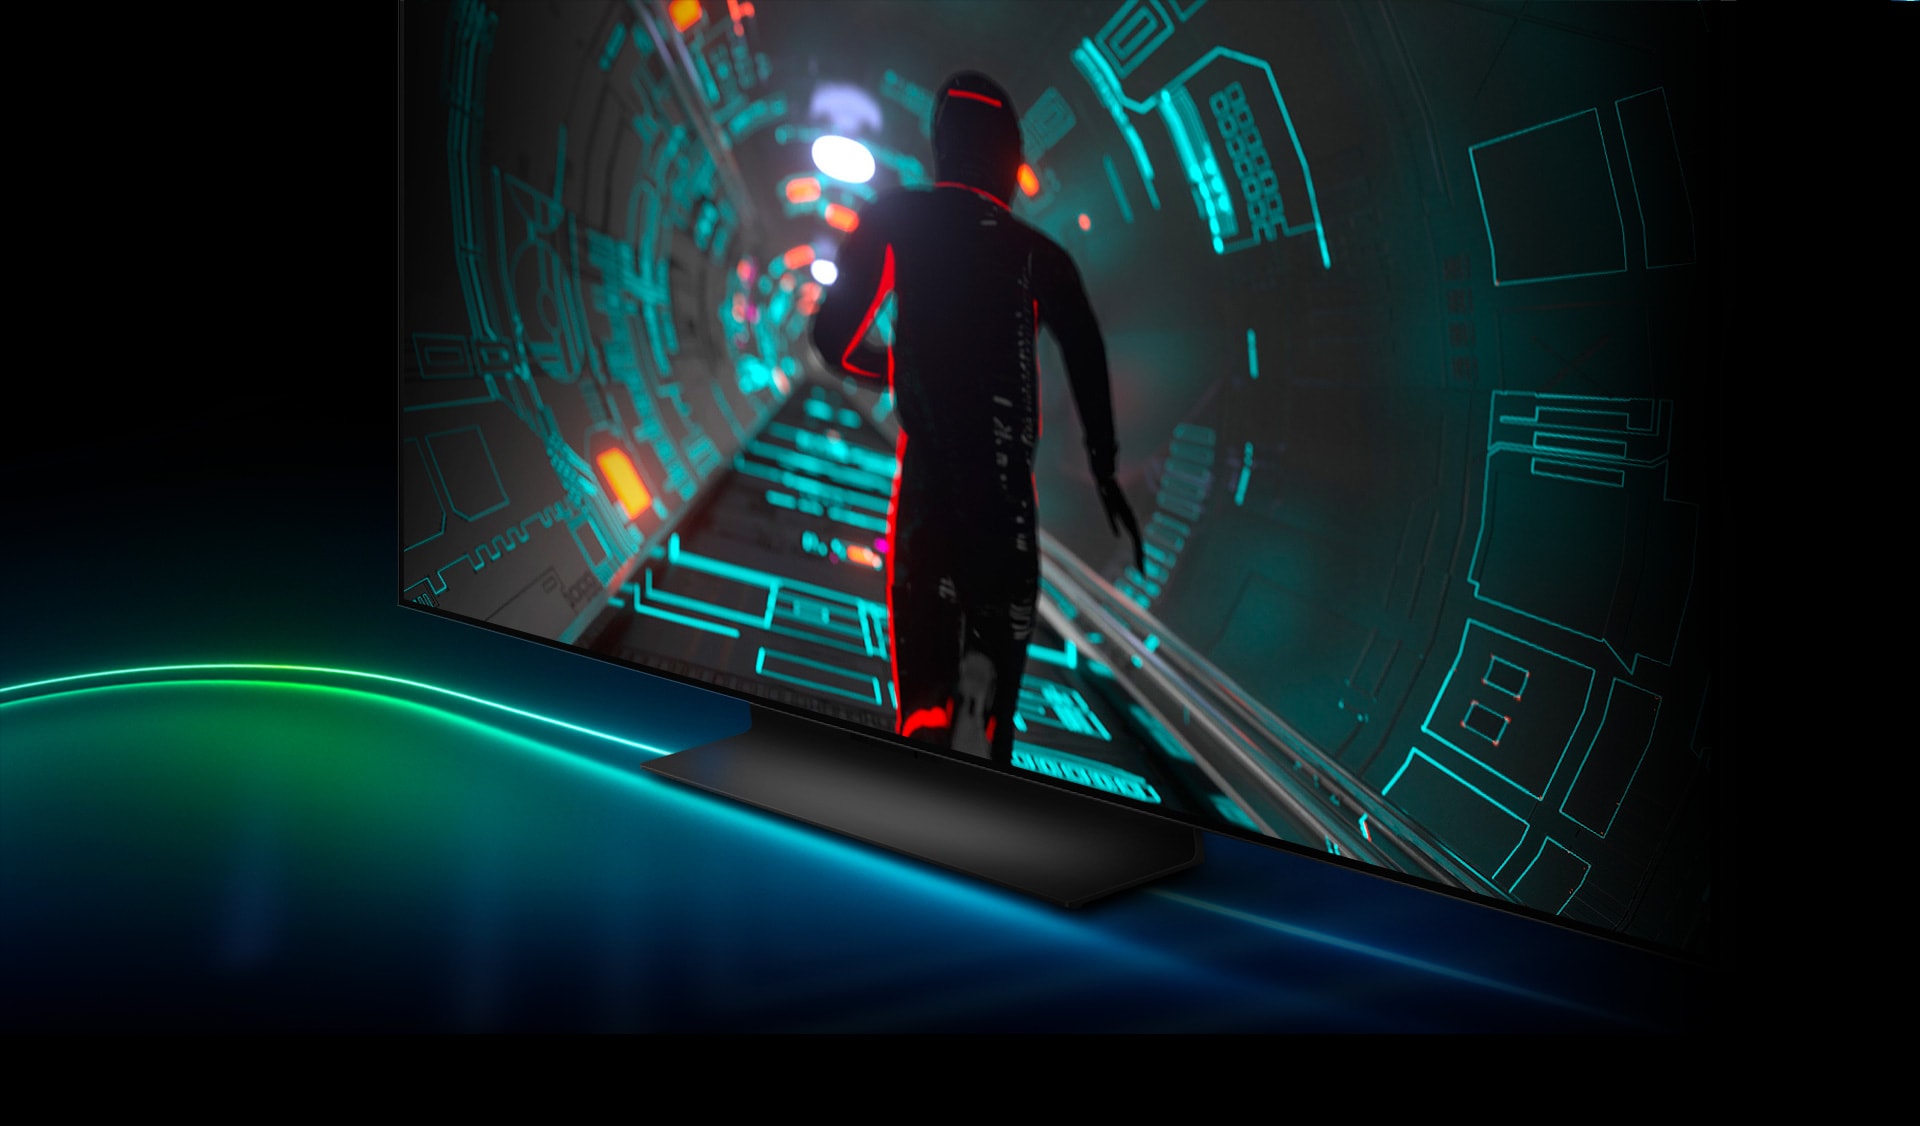 Ένας χαρακτήρας παιχνιδιού επιστημονικής φαντασίας περνά μέσα από ένα τούνελ με φώτα νέον